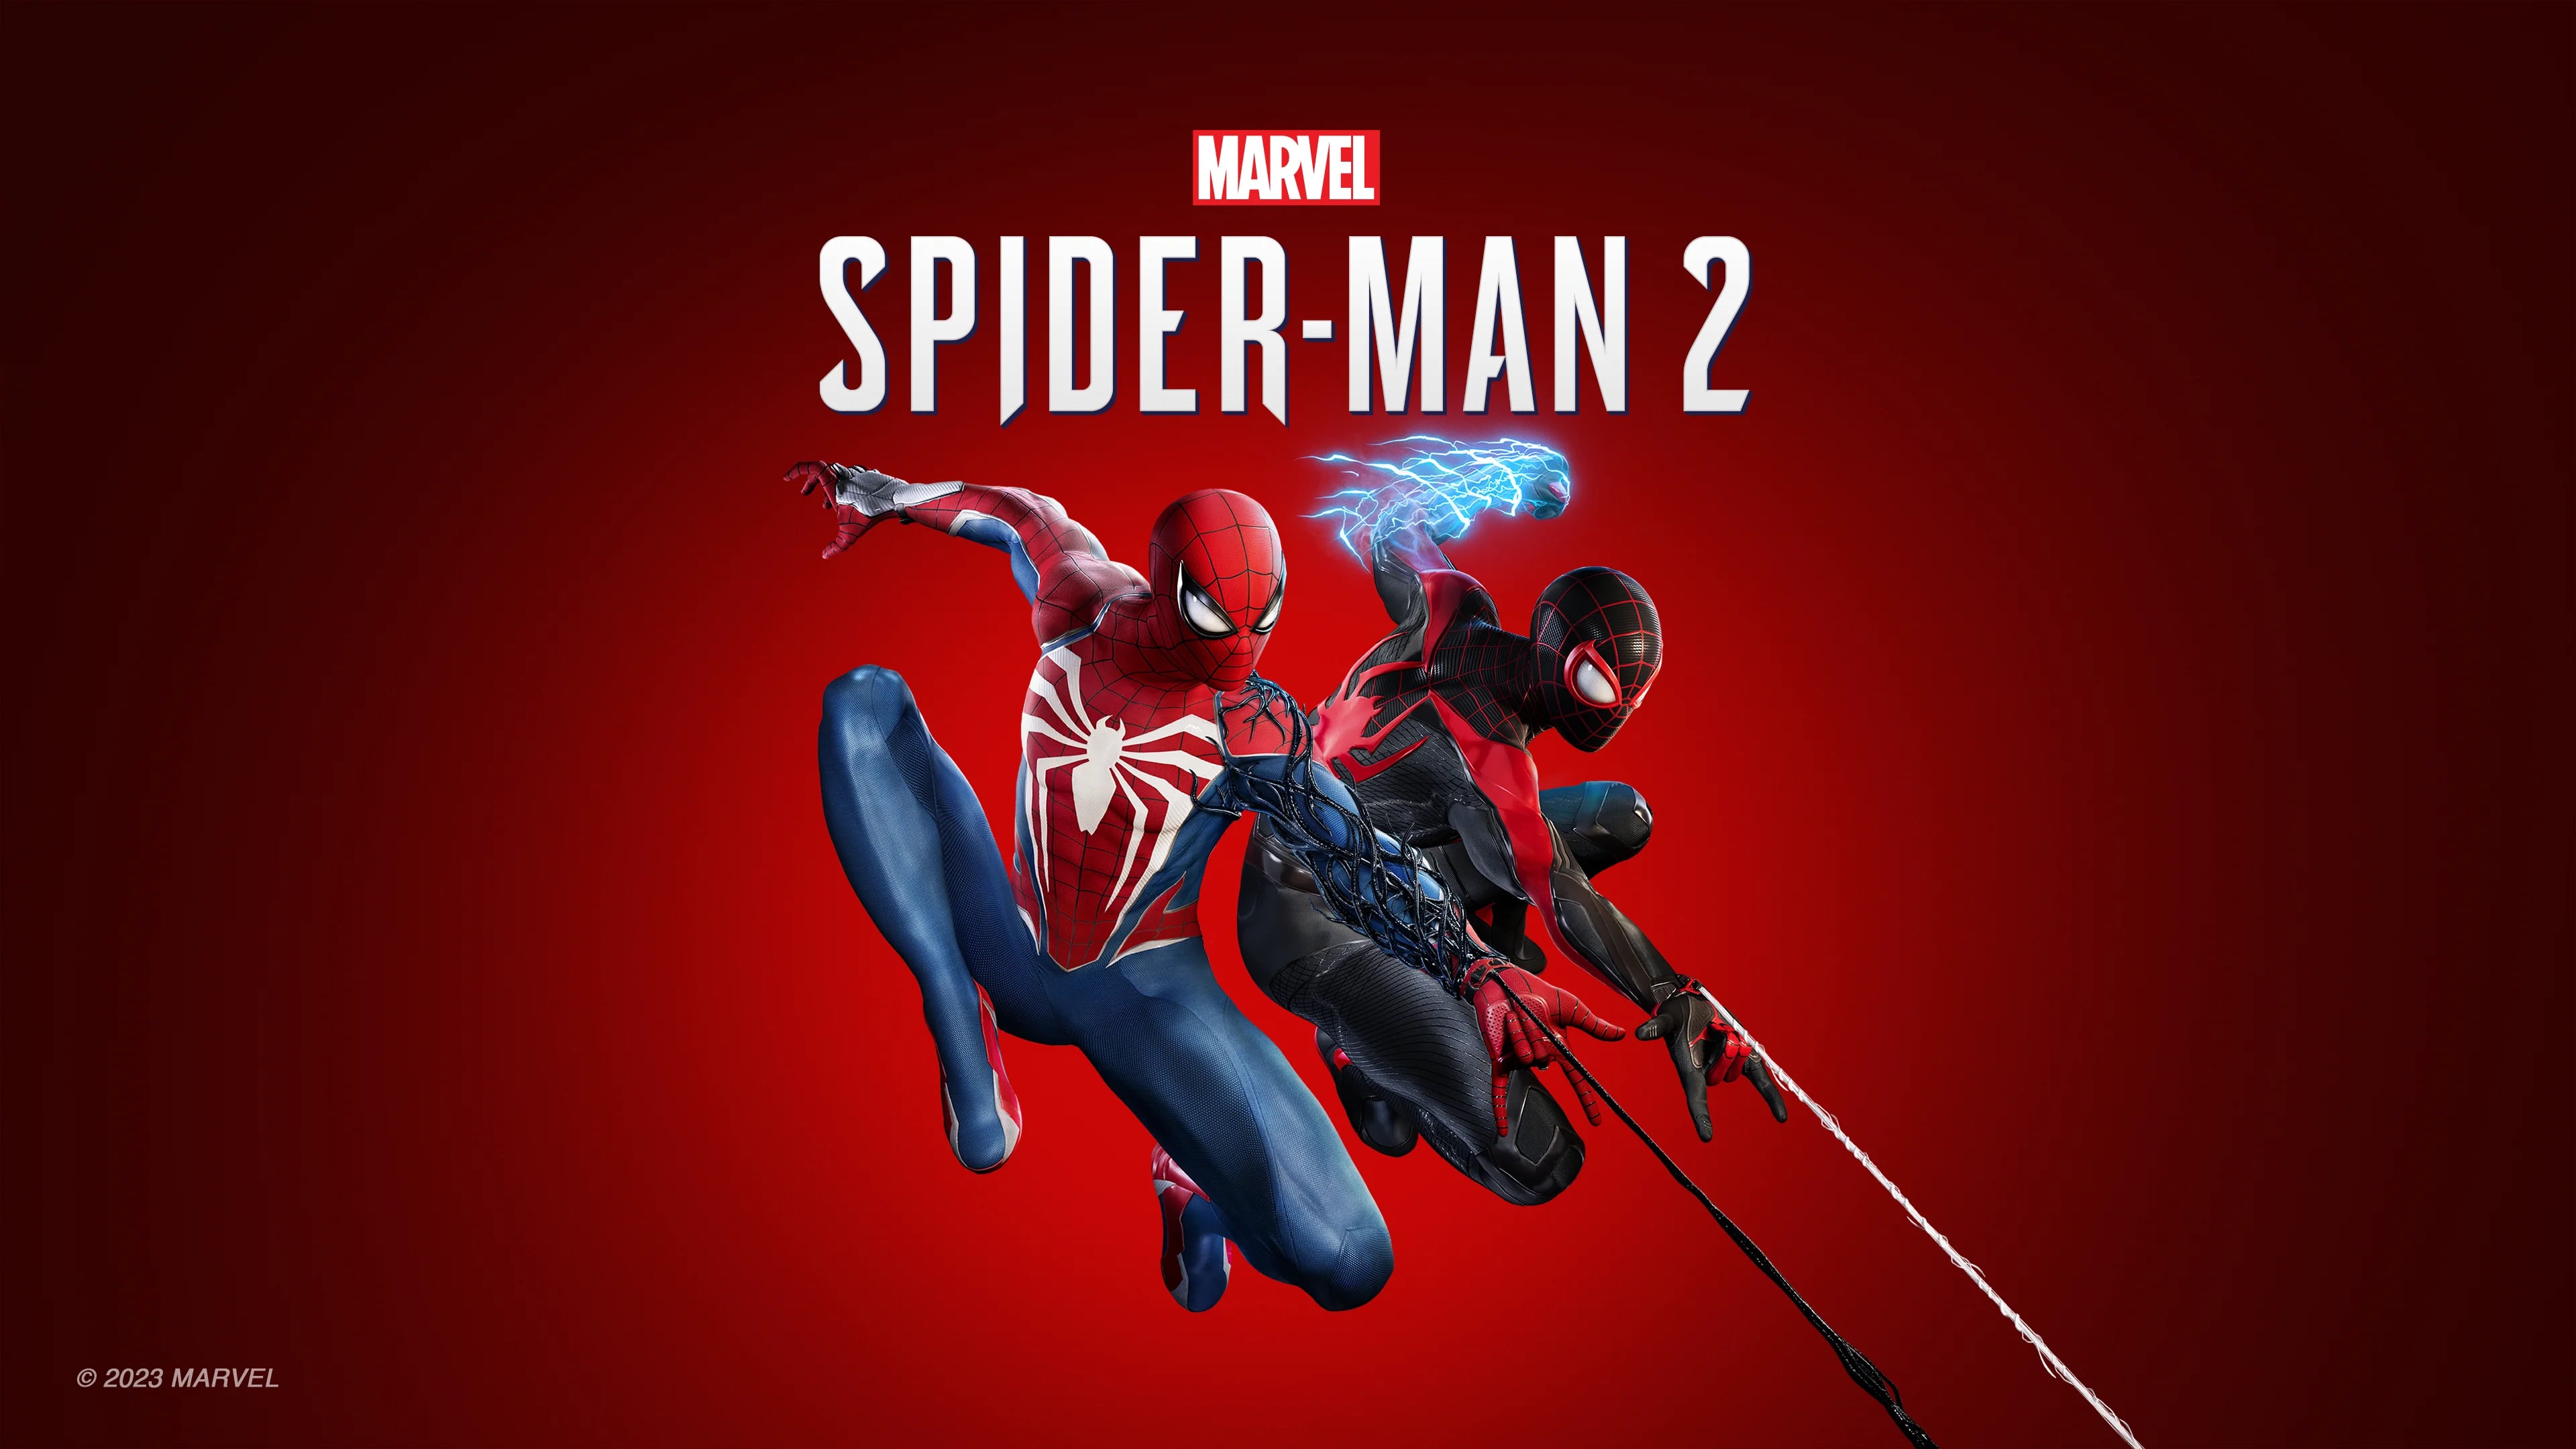 Con nuevas funcionalidades para el control DualSense y una ciudad mucho más extensa, Marvel’s Spider-Man 2 apuesta por aprovechar toda la potencia de la PS5.